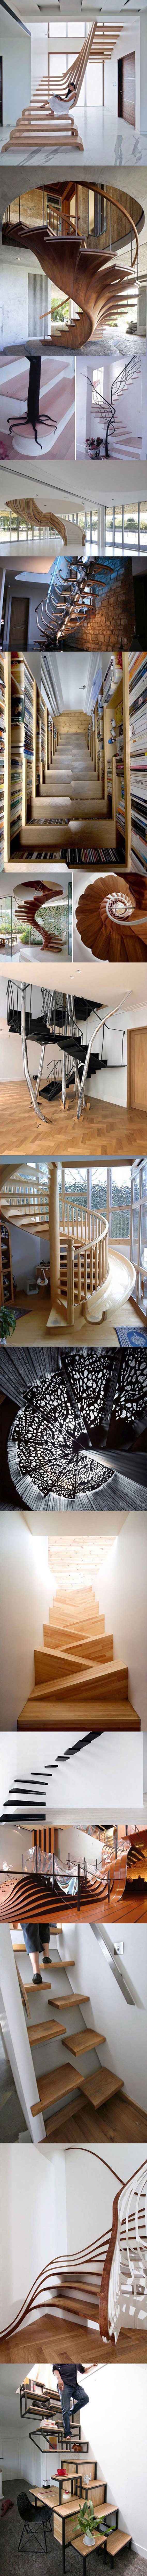 Moderna stubišta očarat će vas svojim neobičnim izgledom